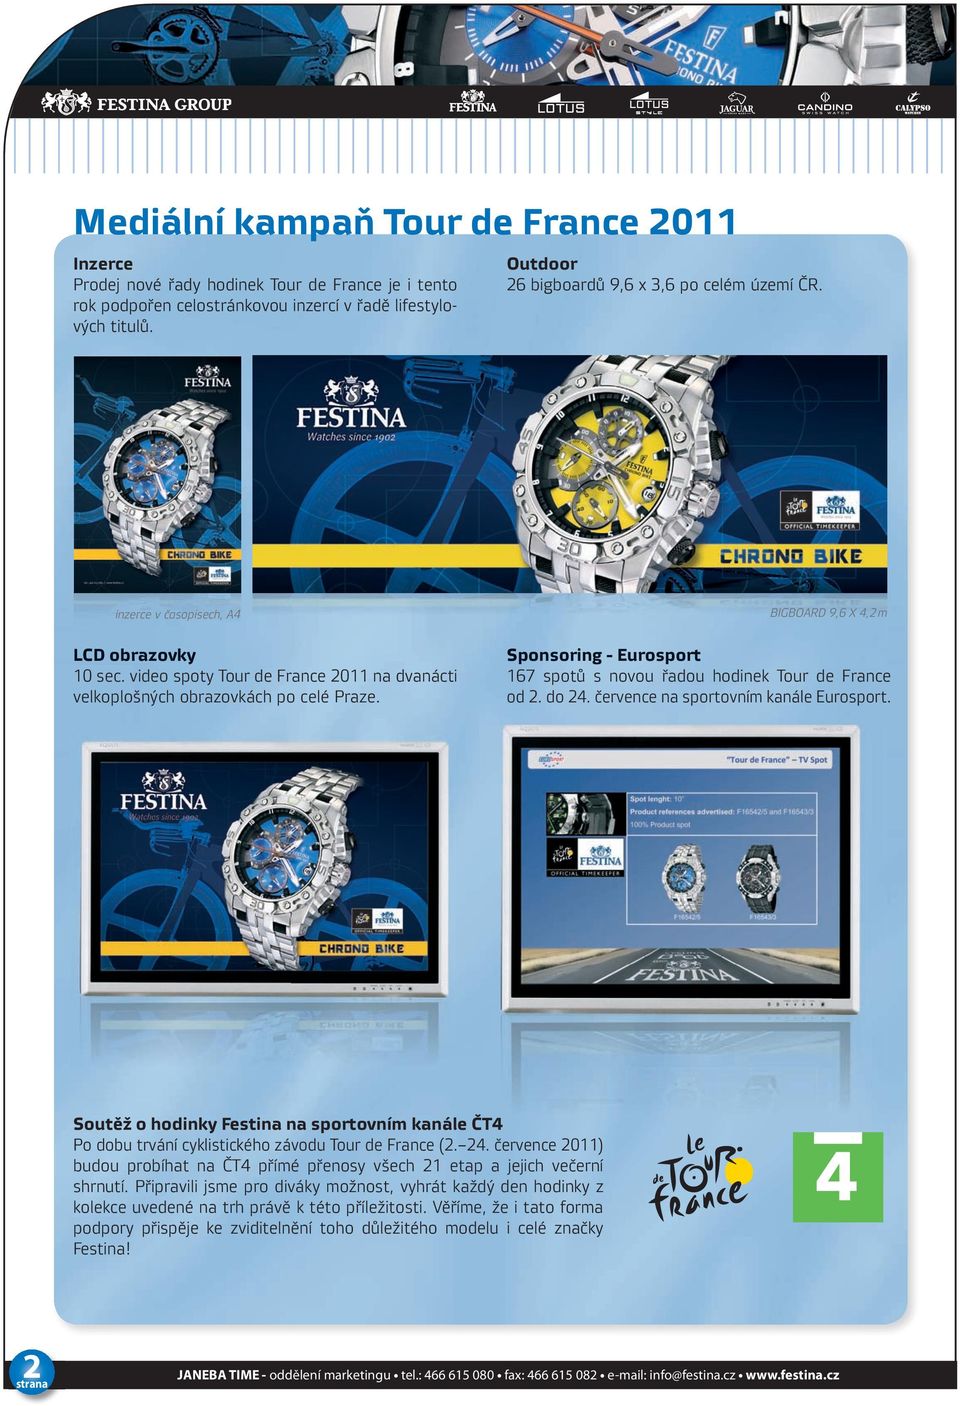 video spoty Tour de France 2011 na dvanácti velkoplošných obrazovkách po celé Praze. Sponsoring - Eurosport 167 spotů s novou řadou hodinek Tour de France od 2. do 24.